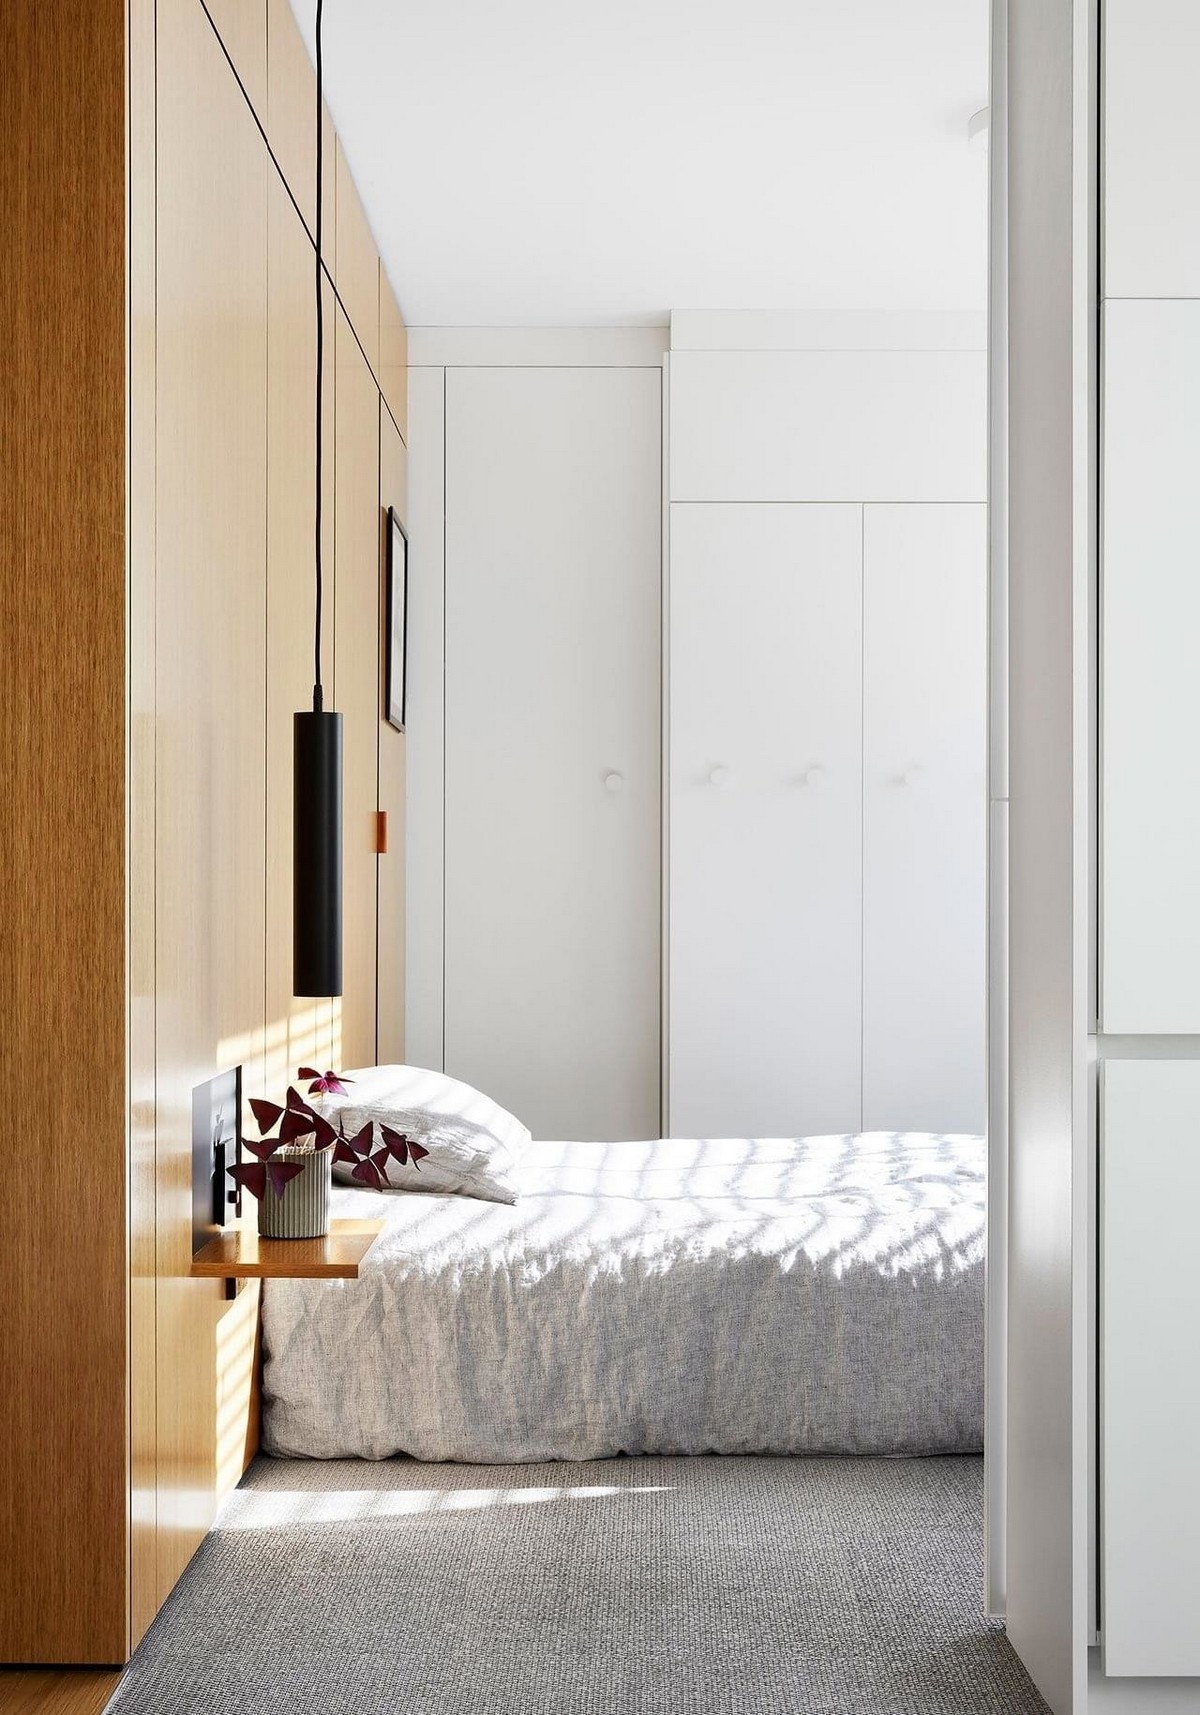 Двухкомнатная квартира в Мельбурне квартира, пространство, хранения, белом, полностью, отдыха, пространства, необходимым, комнаты, ванной, цвете, кухни, Design, которая, столярных, Мельбурне, которые, закрыта, скрытых, Оснащённая